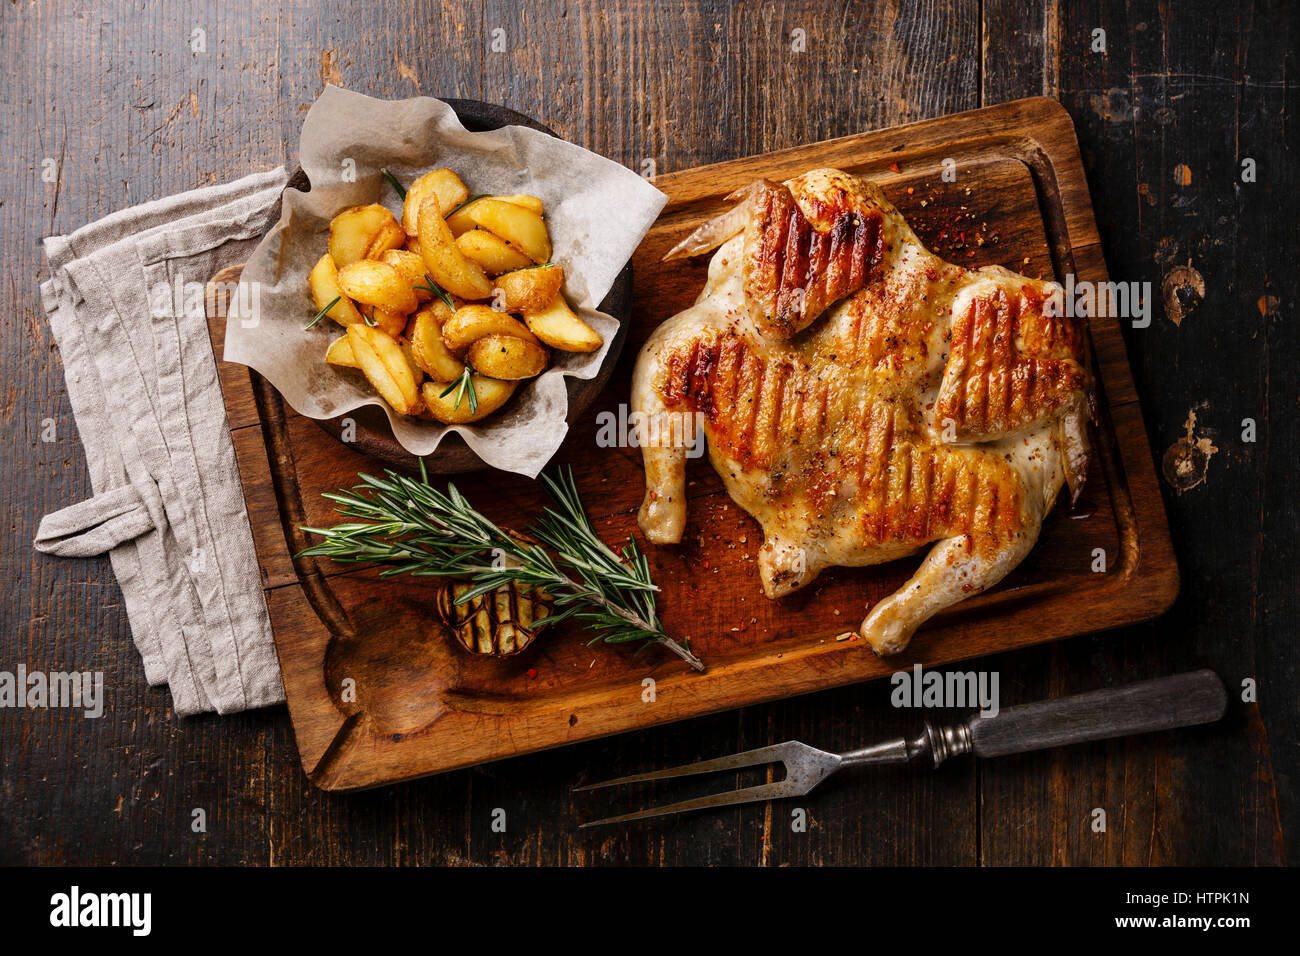 Tabaka frito a la parrilla de pollo asado y rodajas de patata en el fondo de la tabla de cortar de madera Foto de stock